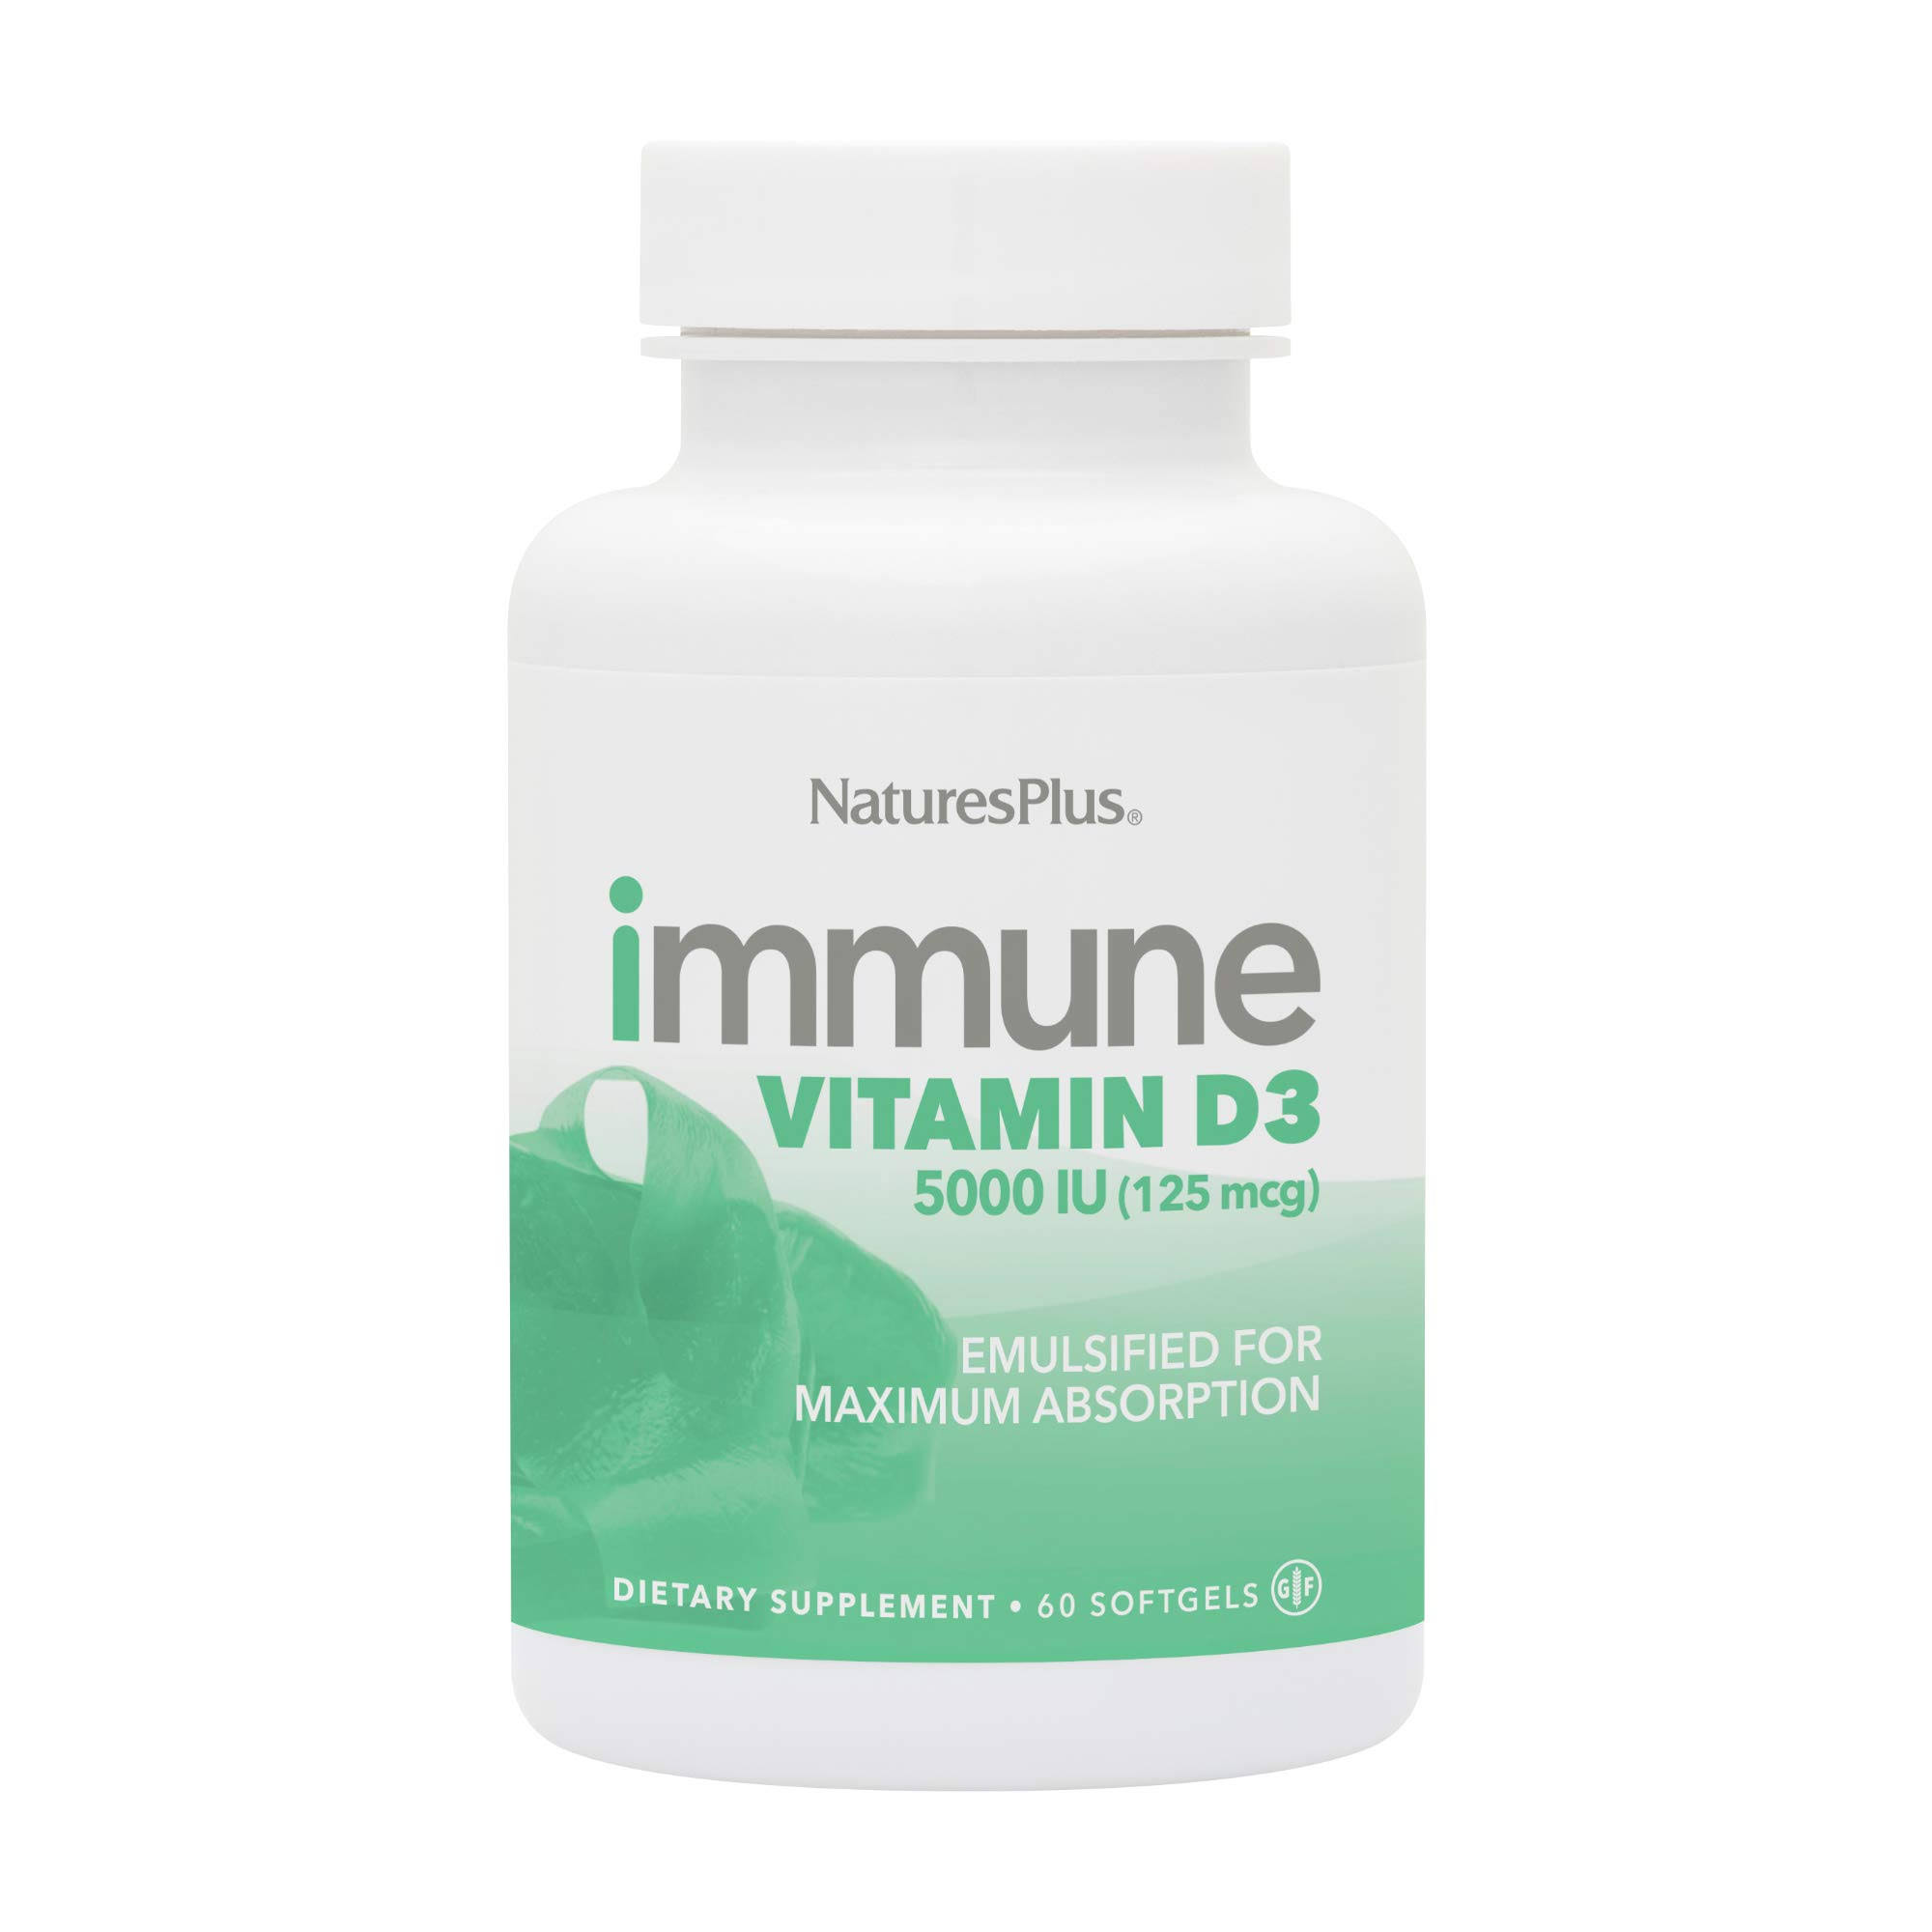 Nature's Plus Immune Vitamin D3 125 mcg (5000 IU) 60 Softgels